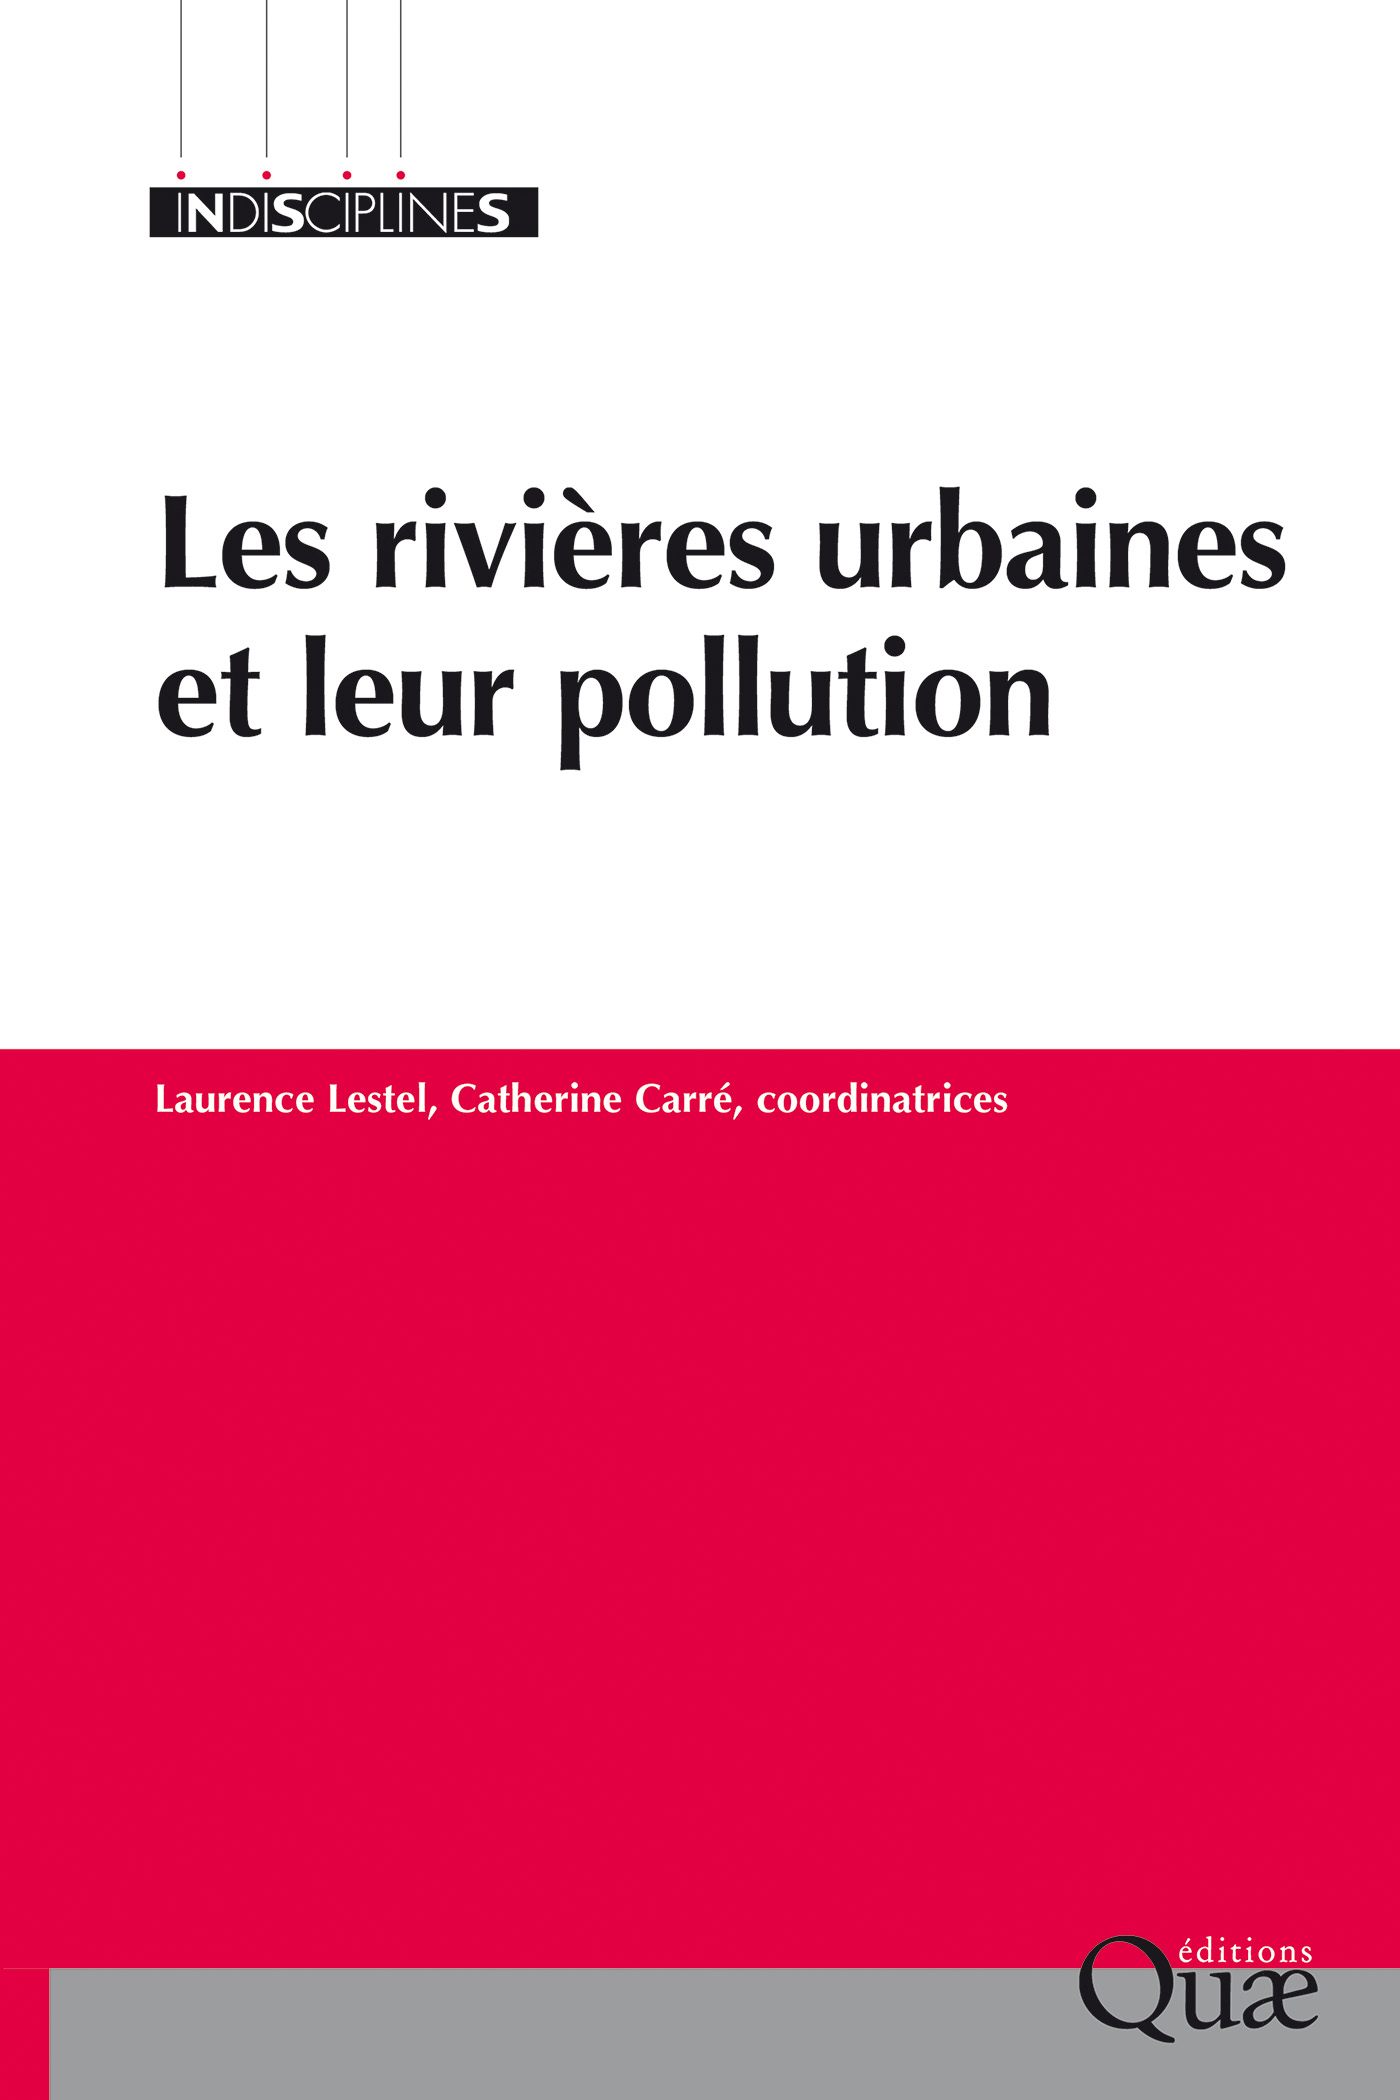 Les rivières urbaines et leur pollution De Laurence Lestel et Catherine Carré - Quæ